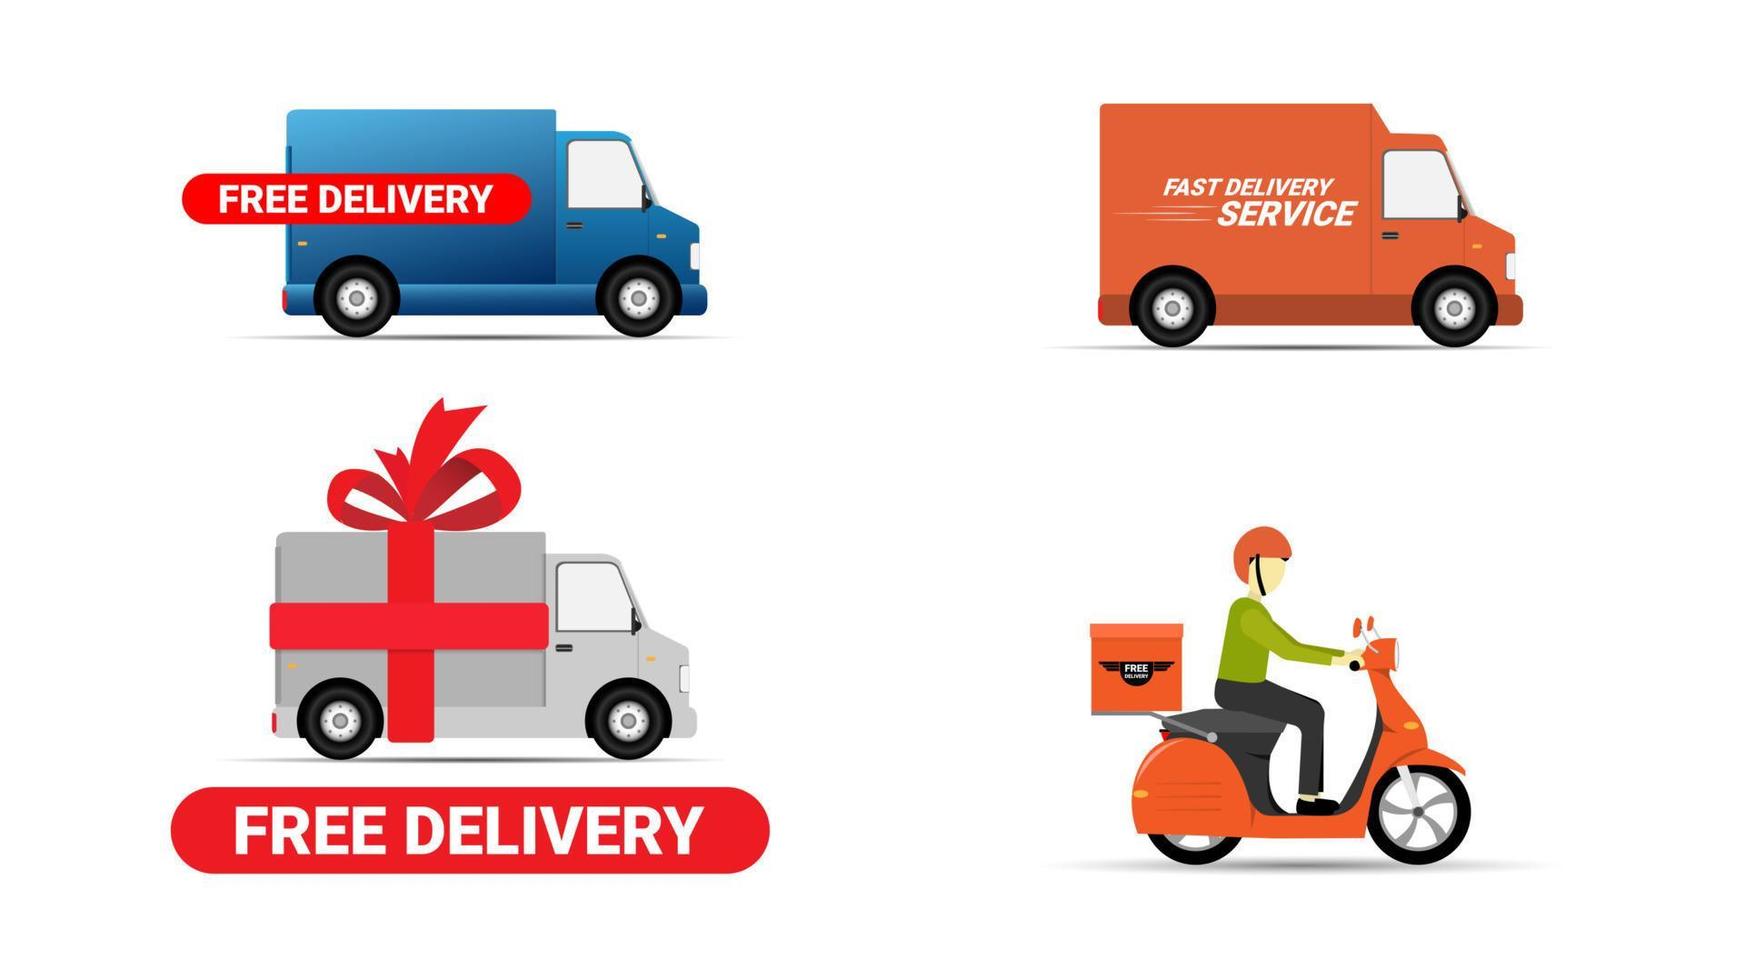 conjunto de ilustración de vector de furgoneta y scooter de entrega. servicio de entrega rapido y gratuito vehiculo, city car cargo, entrega logistica 24 horas.